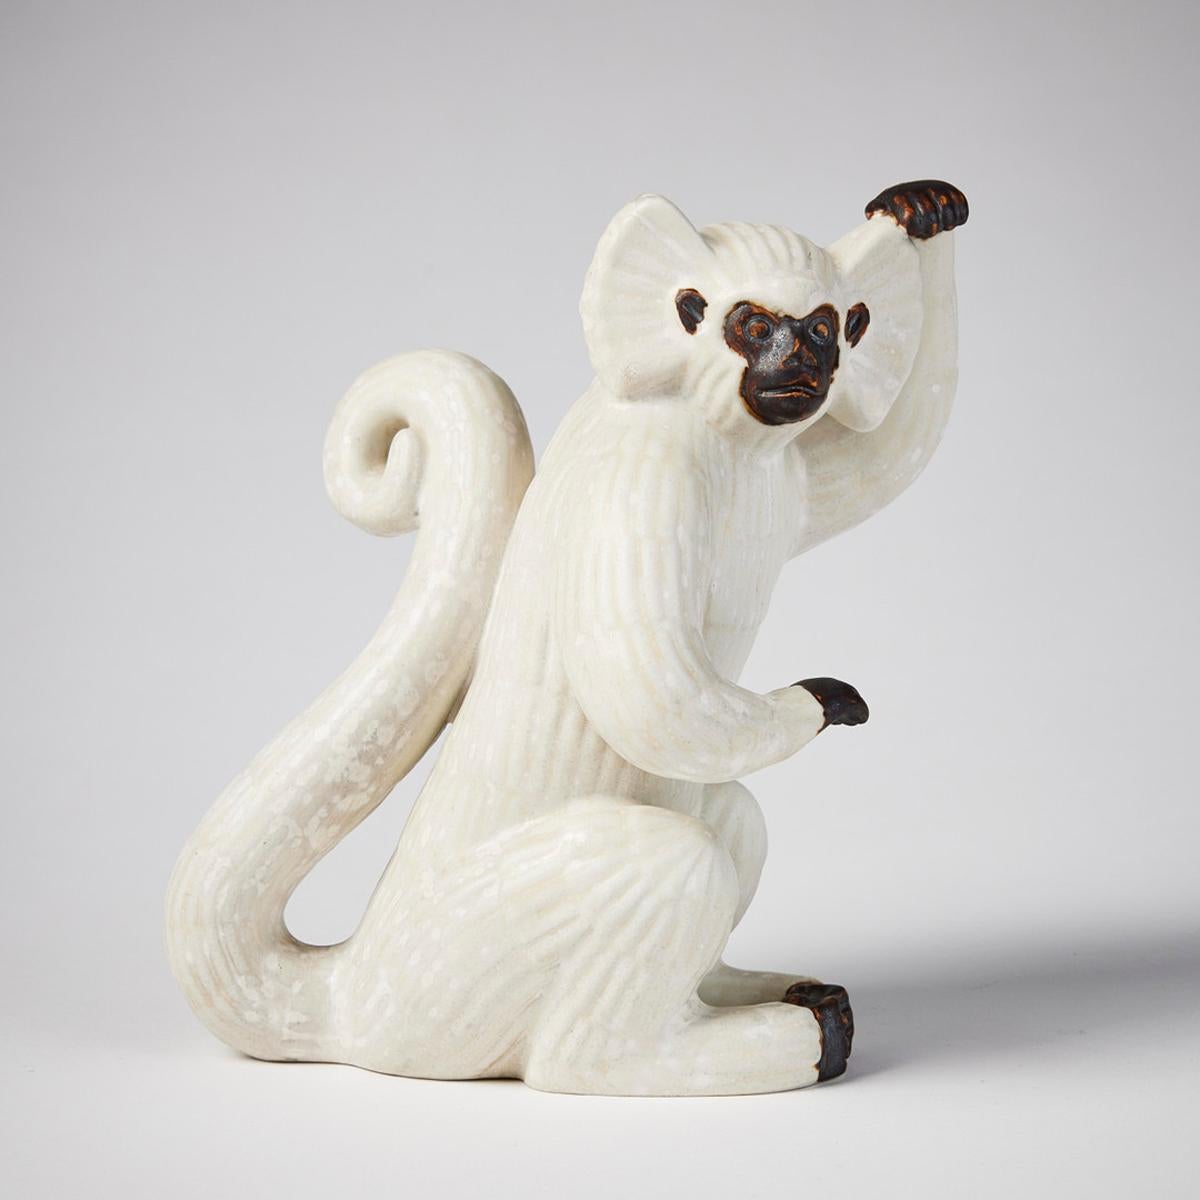 Rare figurine scandinave moderne de Gunnar Nylund représentant un singe Gibbon à carreaux, de Rörstrand, Suède, années 1940. Sculpture avec glaçure coquille d'oeuf et un support en bois. Signé R SWEDEN G.N. Hauteur 17,5 cm. Très bon état. Usure